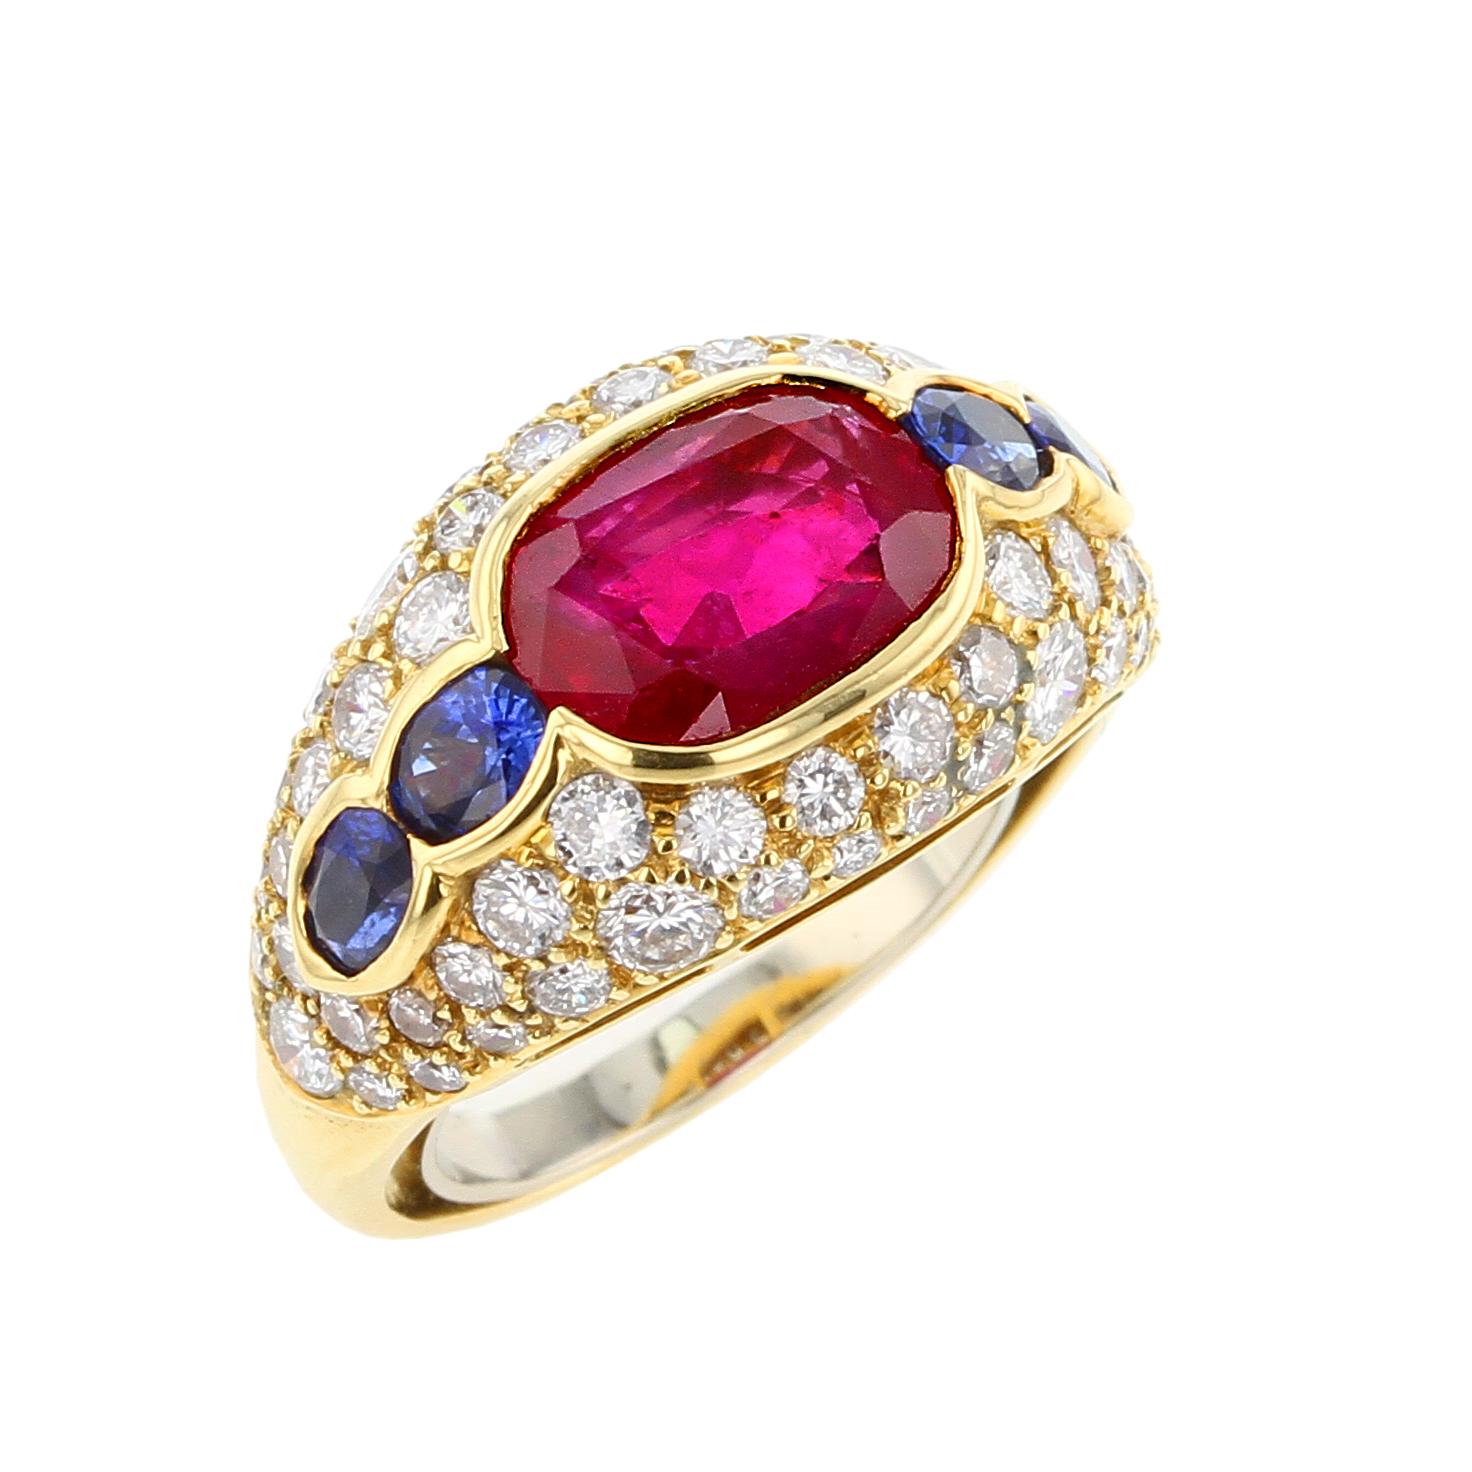 Der Ring von Bvlgari zeigt einen ovalen Burma-Rubin ohne Hitze mit den Maßen 9,85 x 7,00 x 4,28 mm und einem Gewicht von 3,20 Karat, flankiert von ovalen Saphiren mit einem Gewicht von ca. 0,75 Karat, akzentuiert von Diamanten im Brillantschliff mit